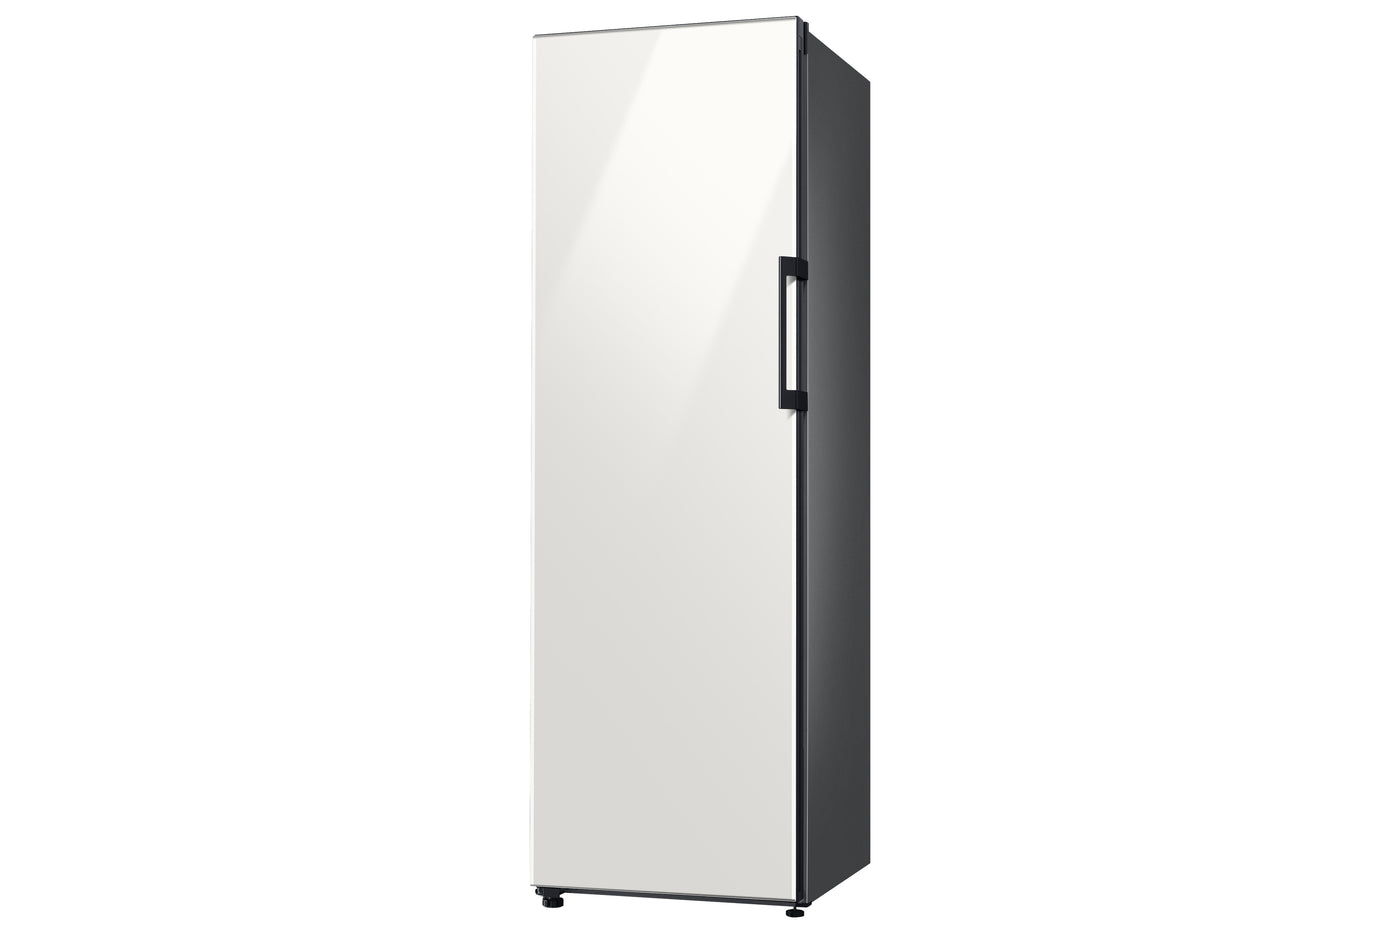 Samsung BESPOKE Smart Upright Freezer (Without Panels) (11.4 Cu.Ft.) - RZ11T7474AP/AA